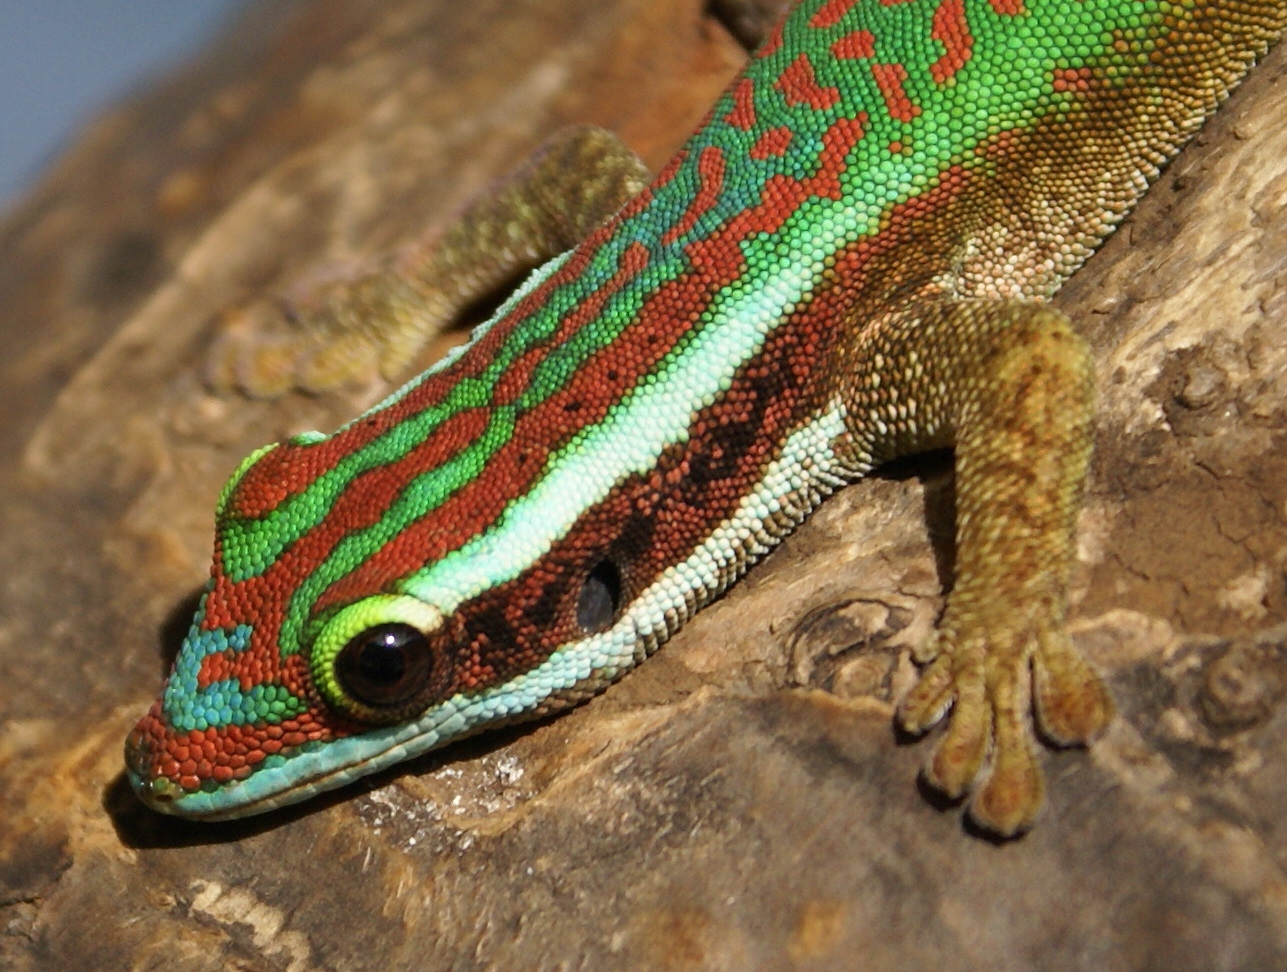 gecko vert